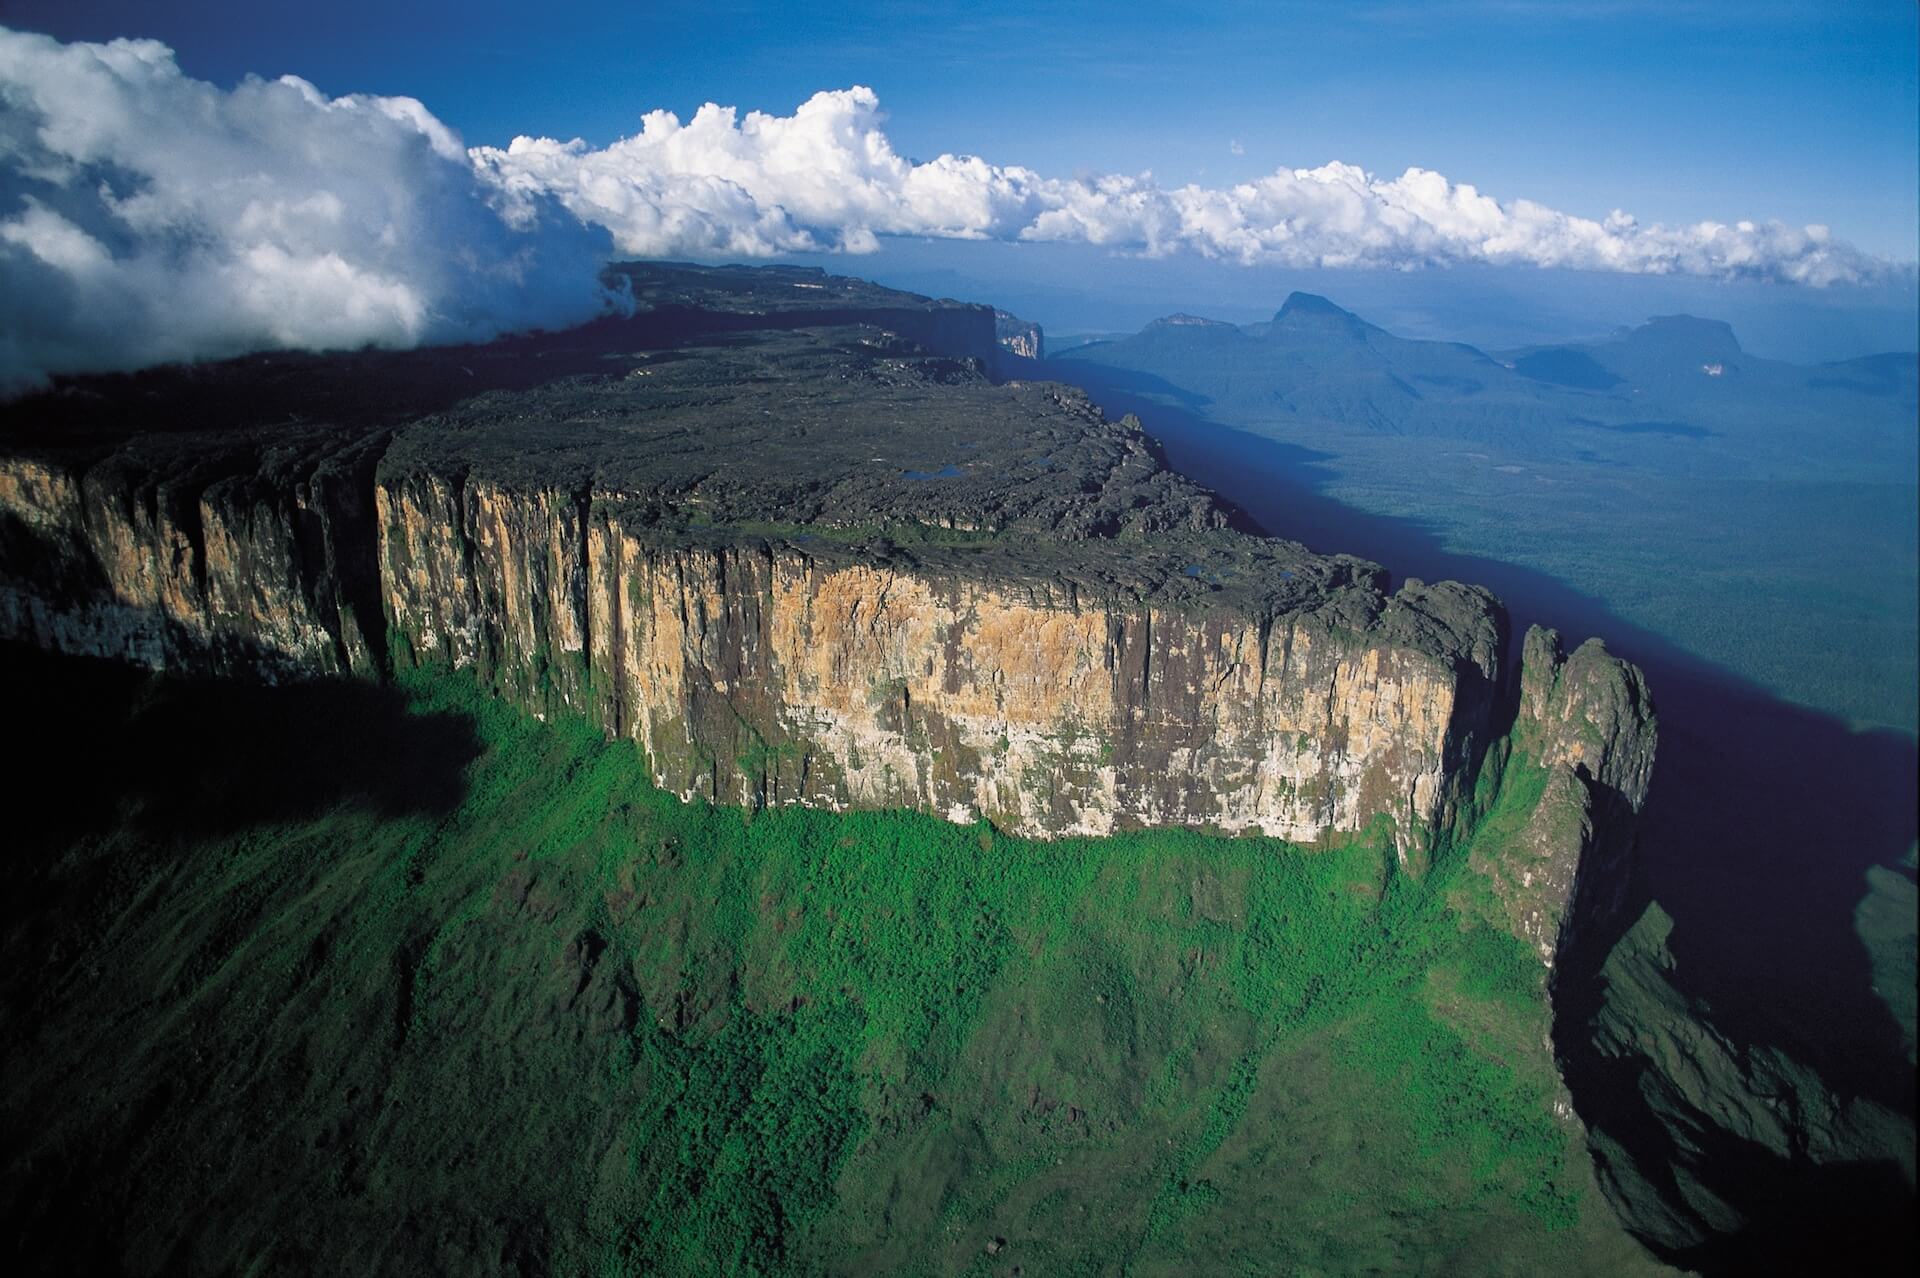 Самый высокий водопад гвианском плоскогорье. Столовые горы Тепуи в Венесуэле. Столовые горы Рорайма Венесуэлы. Венесуэла плато Тепуи. Венесуэла парк Канайма гора Рорайма.